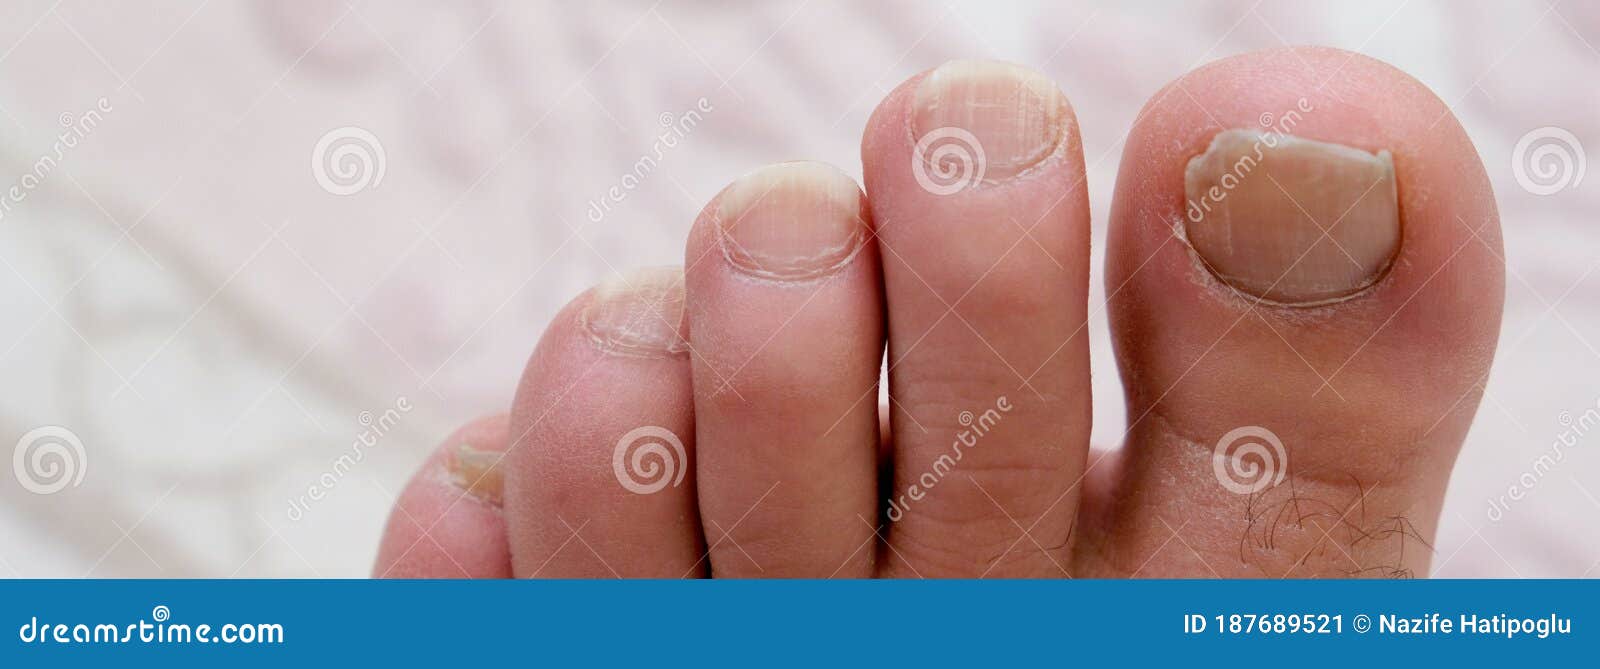 Cómo cuidar las uñas de los pies  6 pasos